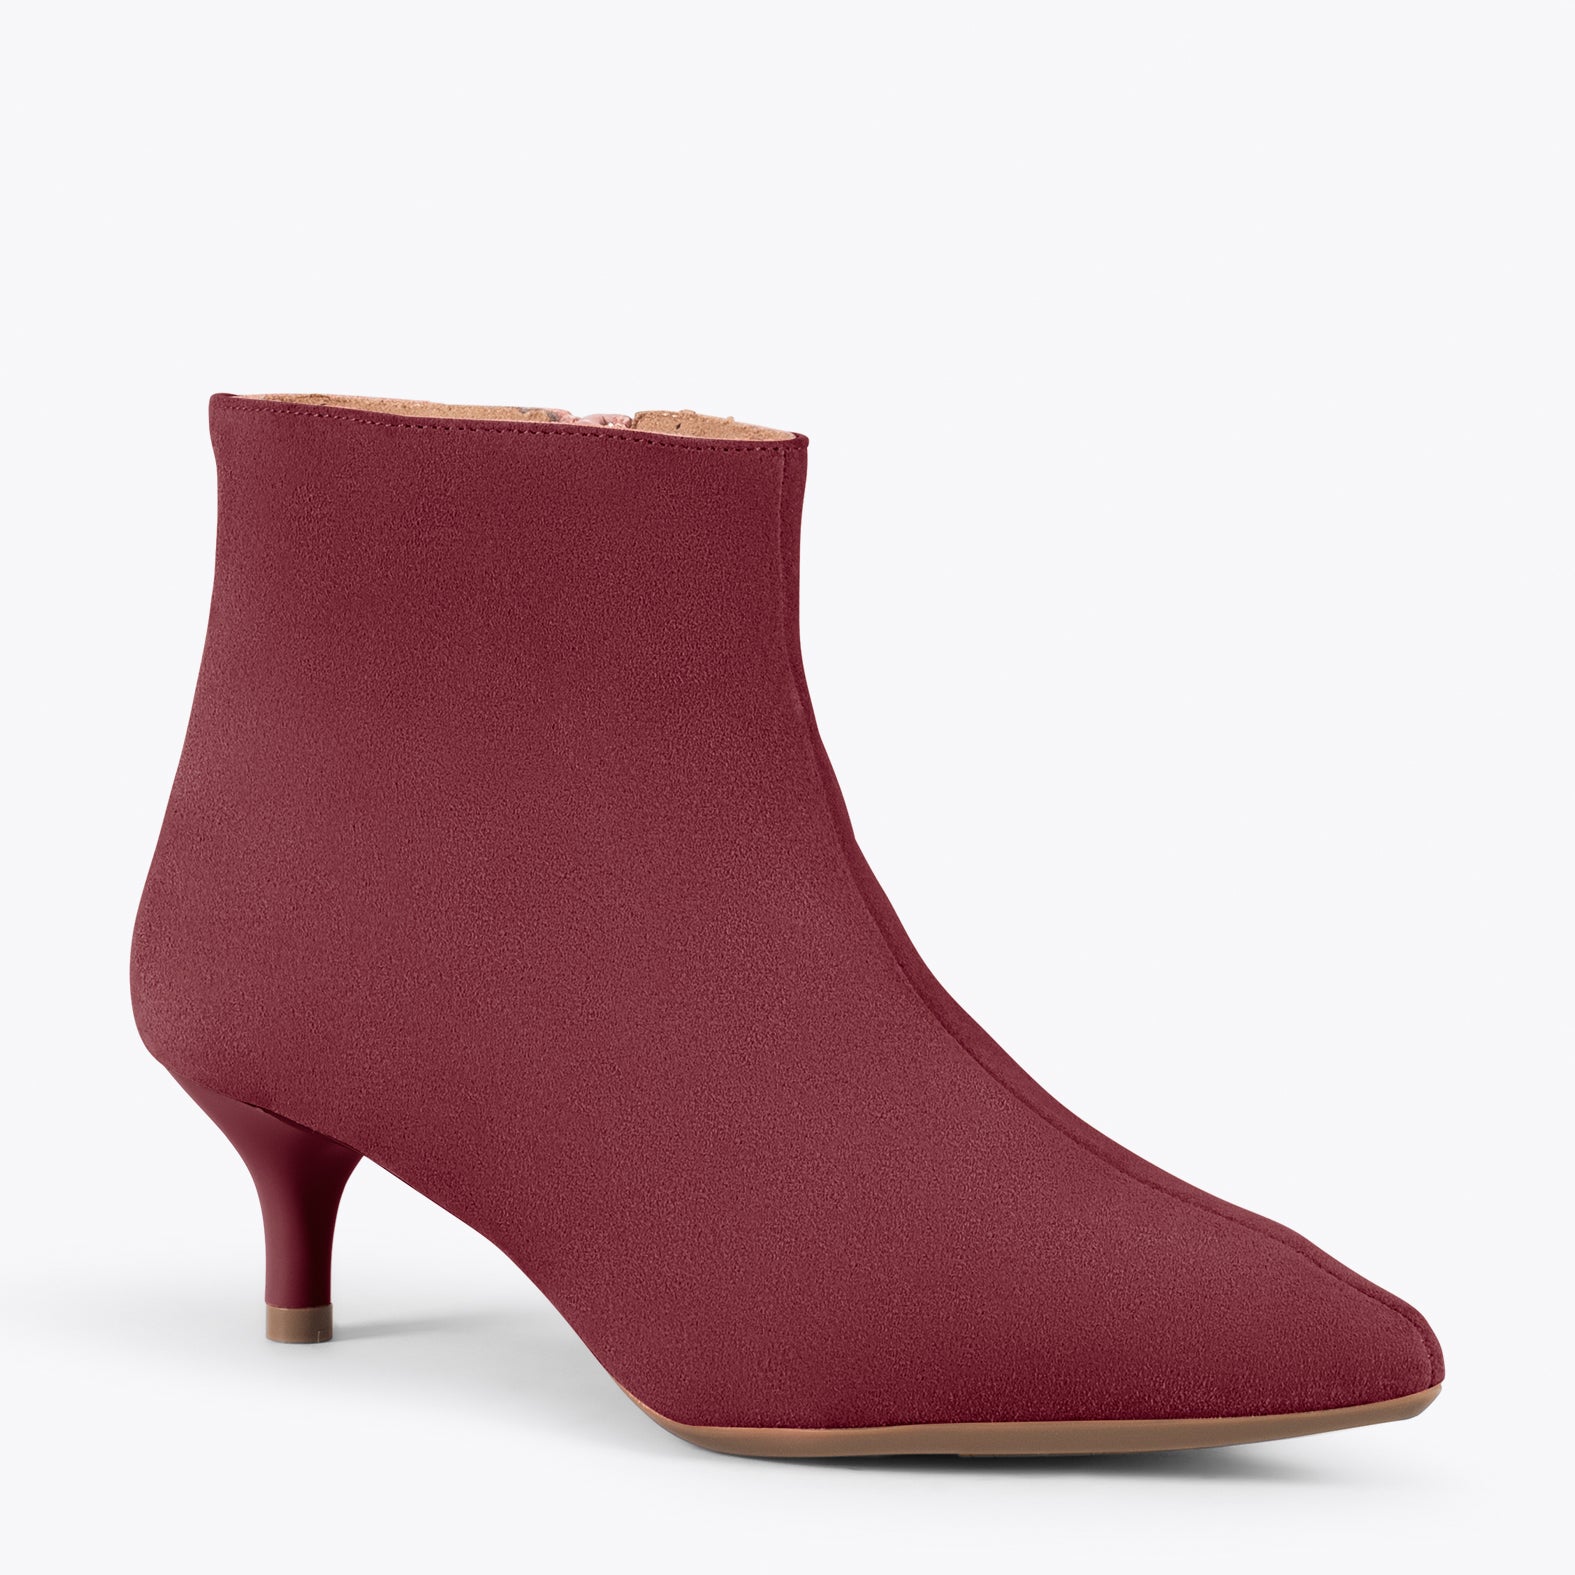 OUTFIT – BURGUNDY elegant low heel booties